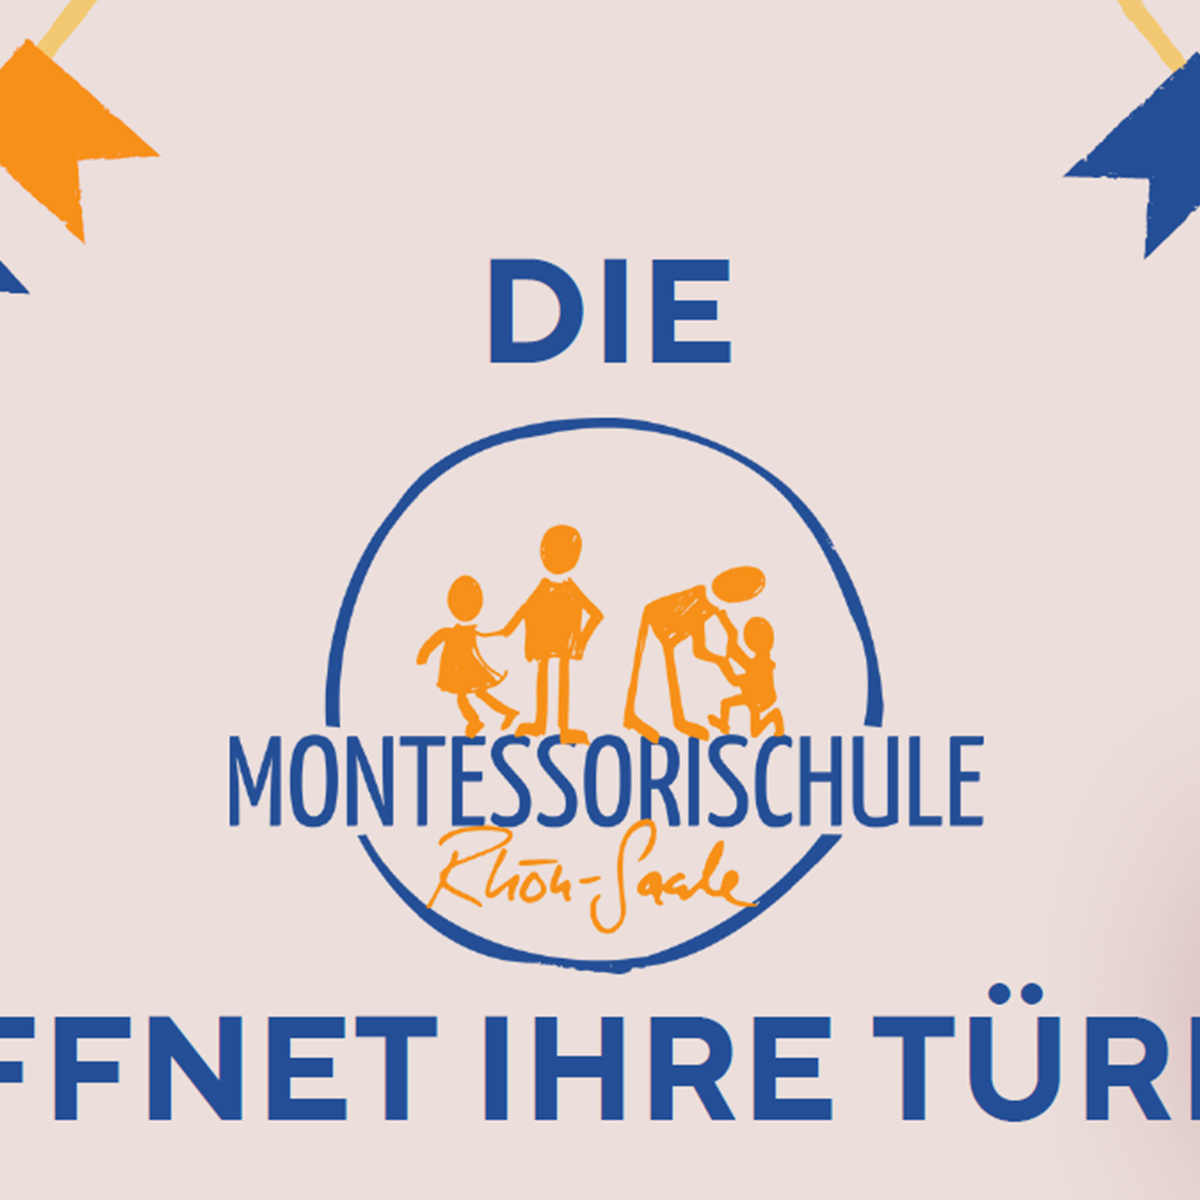 DIE Montessorieschule Rhön-Saale ÖFFNET IHRE TÜREN